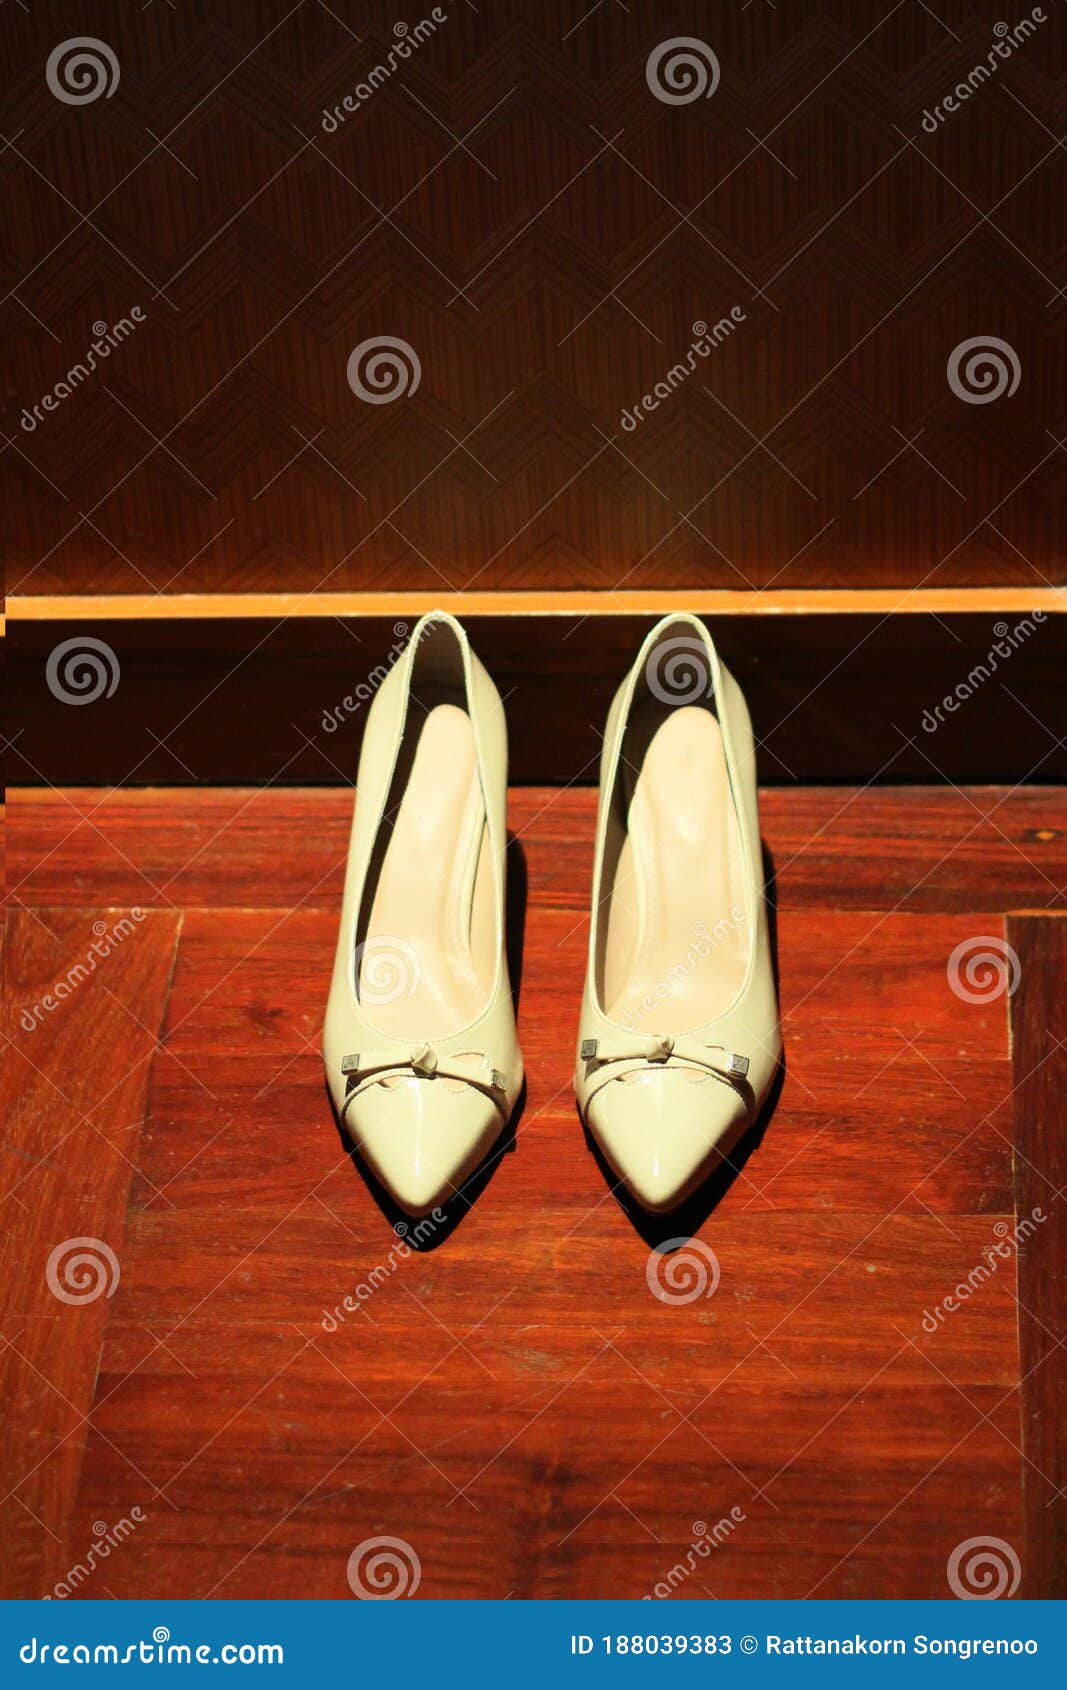 Calzado Blanco Para Mujeres Con Tacones Altos Gruesos Moda Mujeres Zapatos En Piso De Madera Imagen de archivo Imagen de ropa, calidad: 188039383